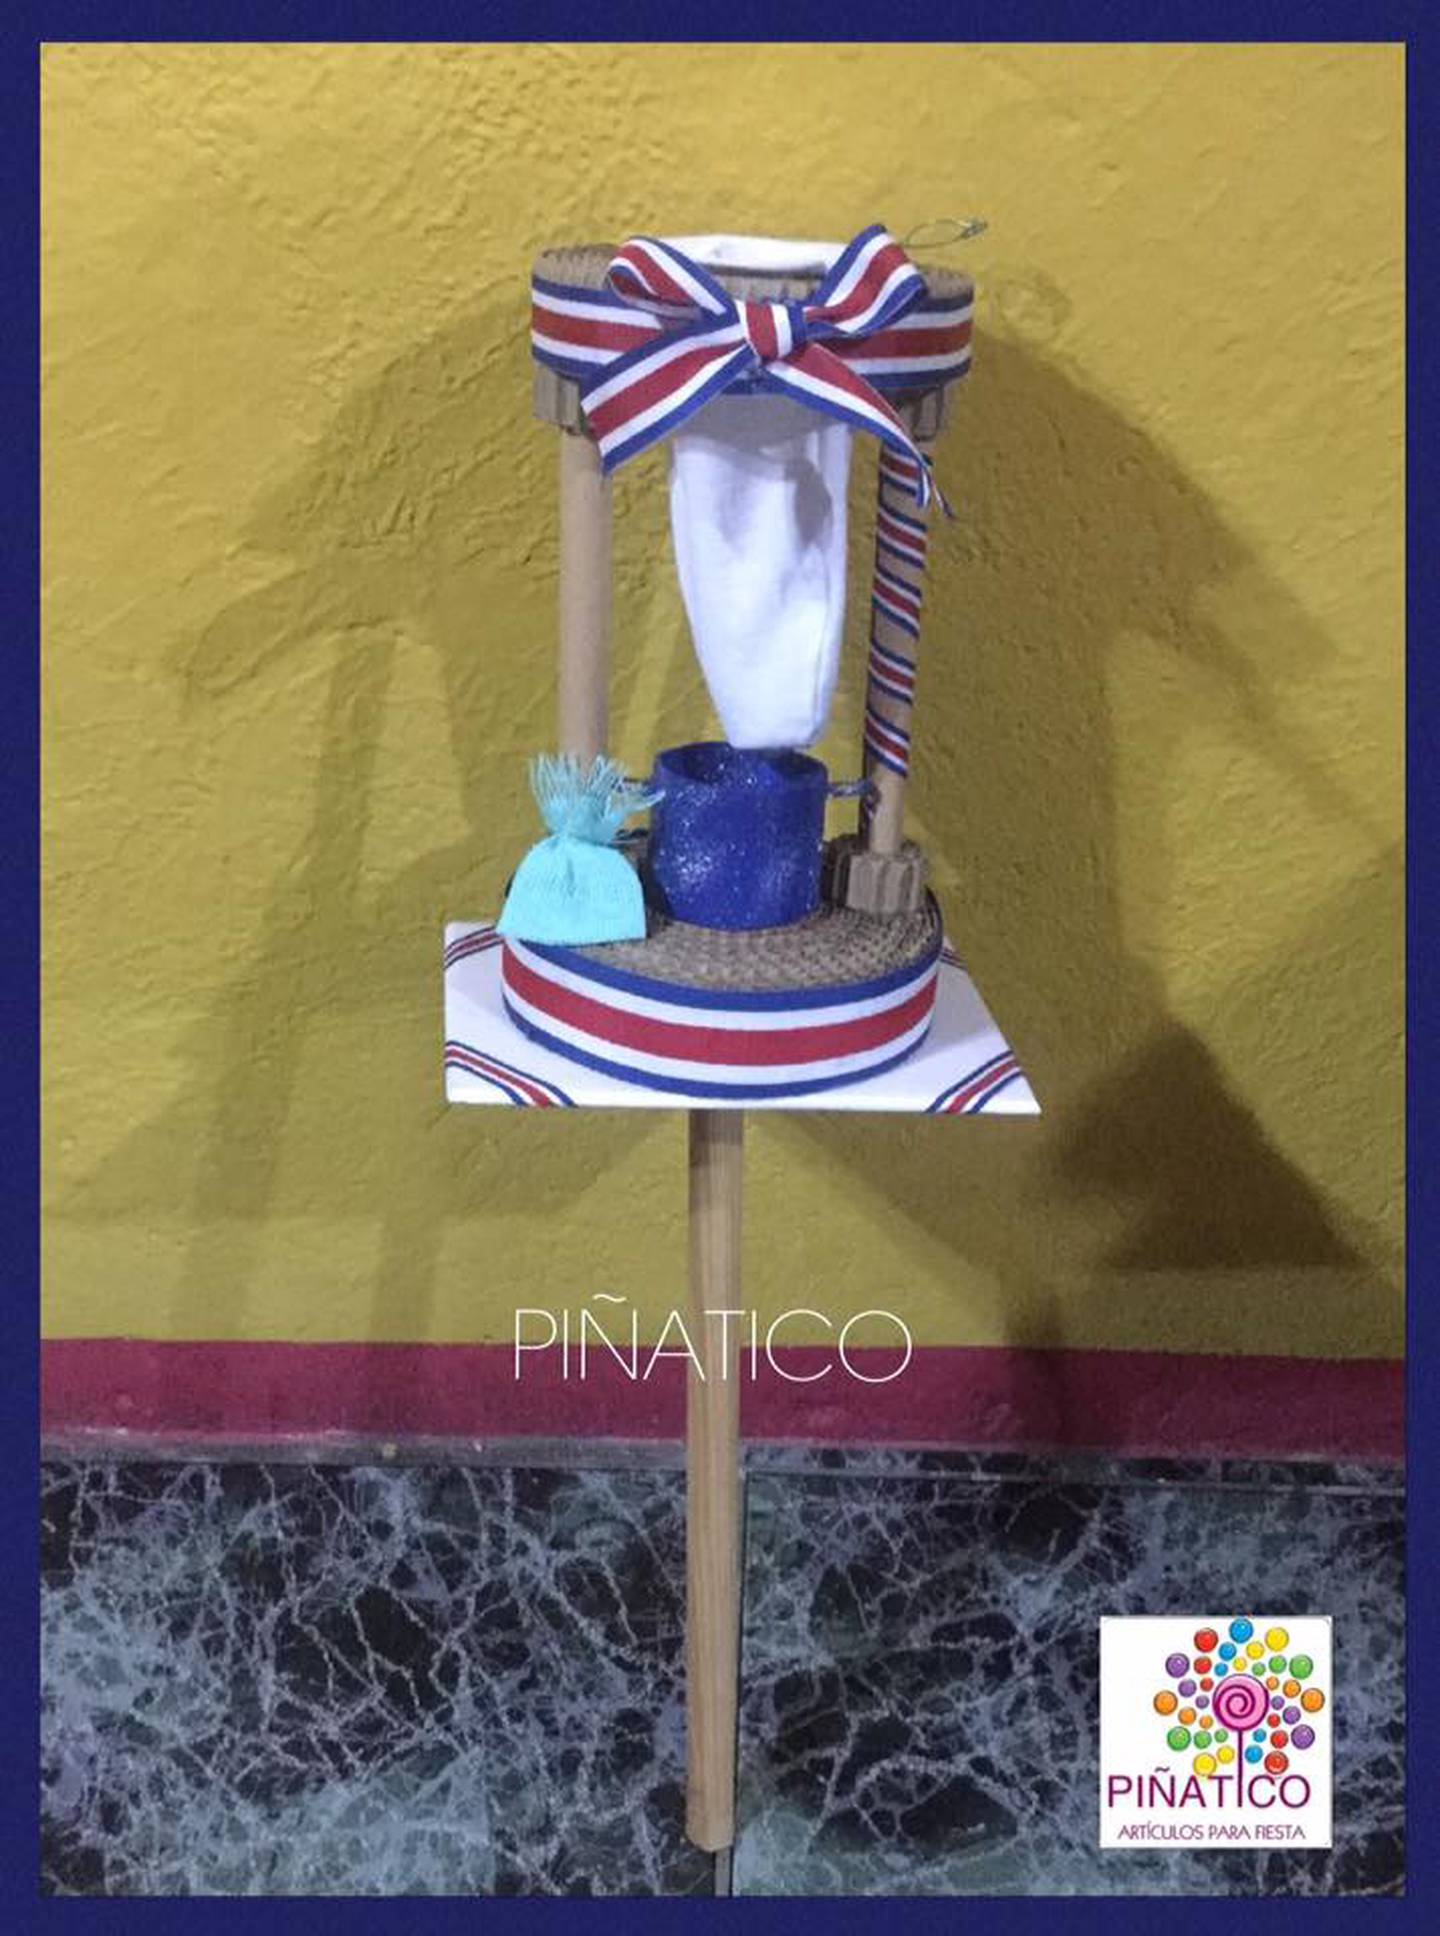 Hace 12 años doña Lilliana Quesada Mora comenzó un emprendimiento al que llama Piñatico y está dedicad 100% a hacer piñatas, pero cuando llega setiembre las piñatas se guardan para darle paso a los faroles